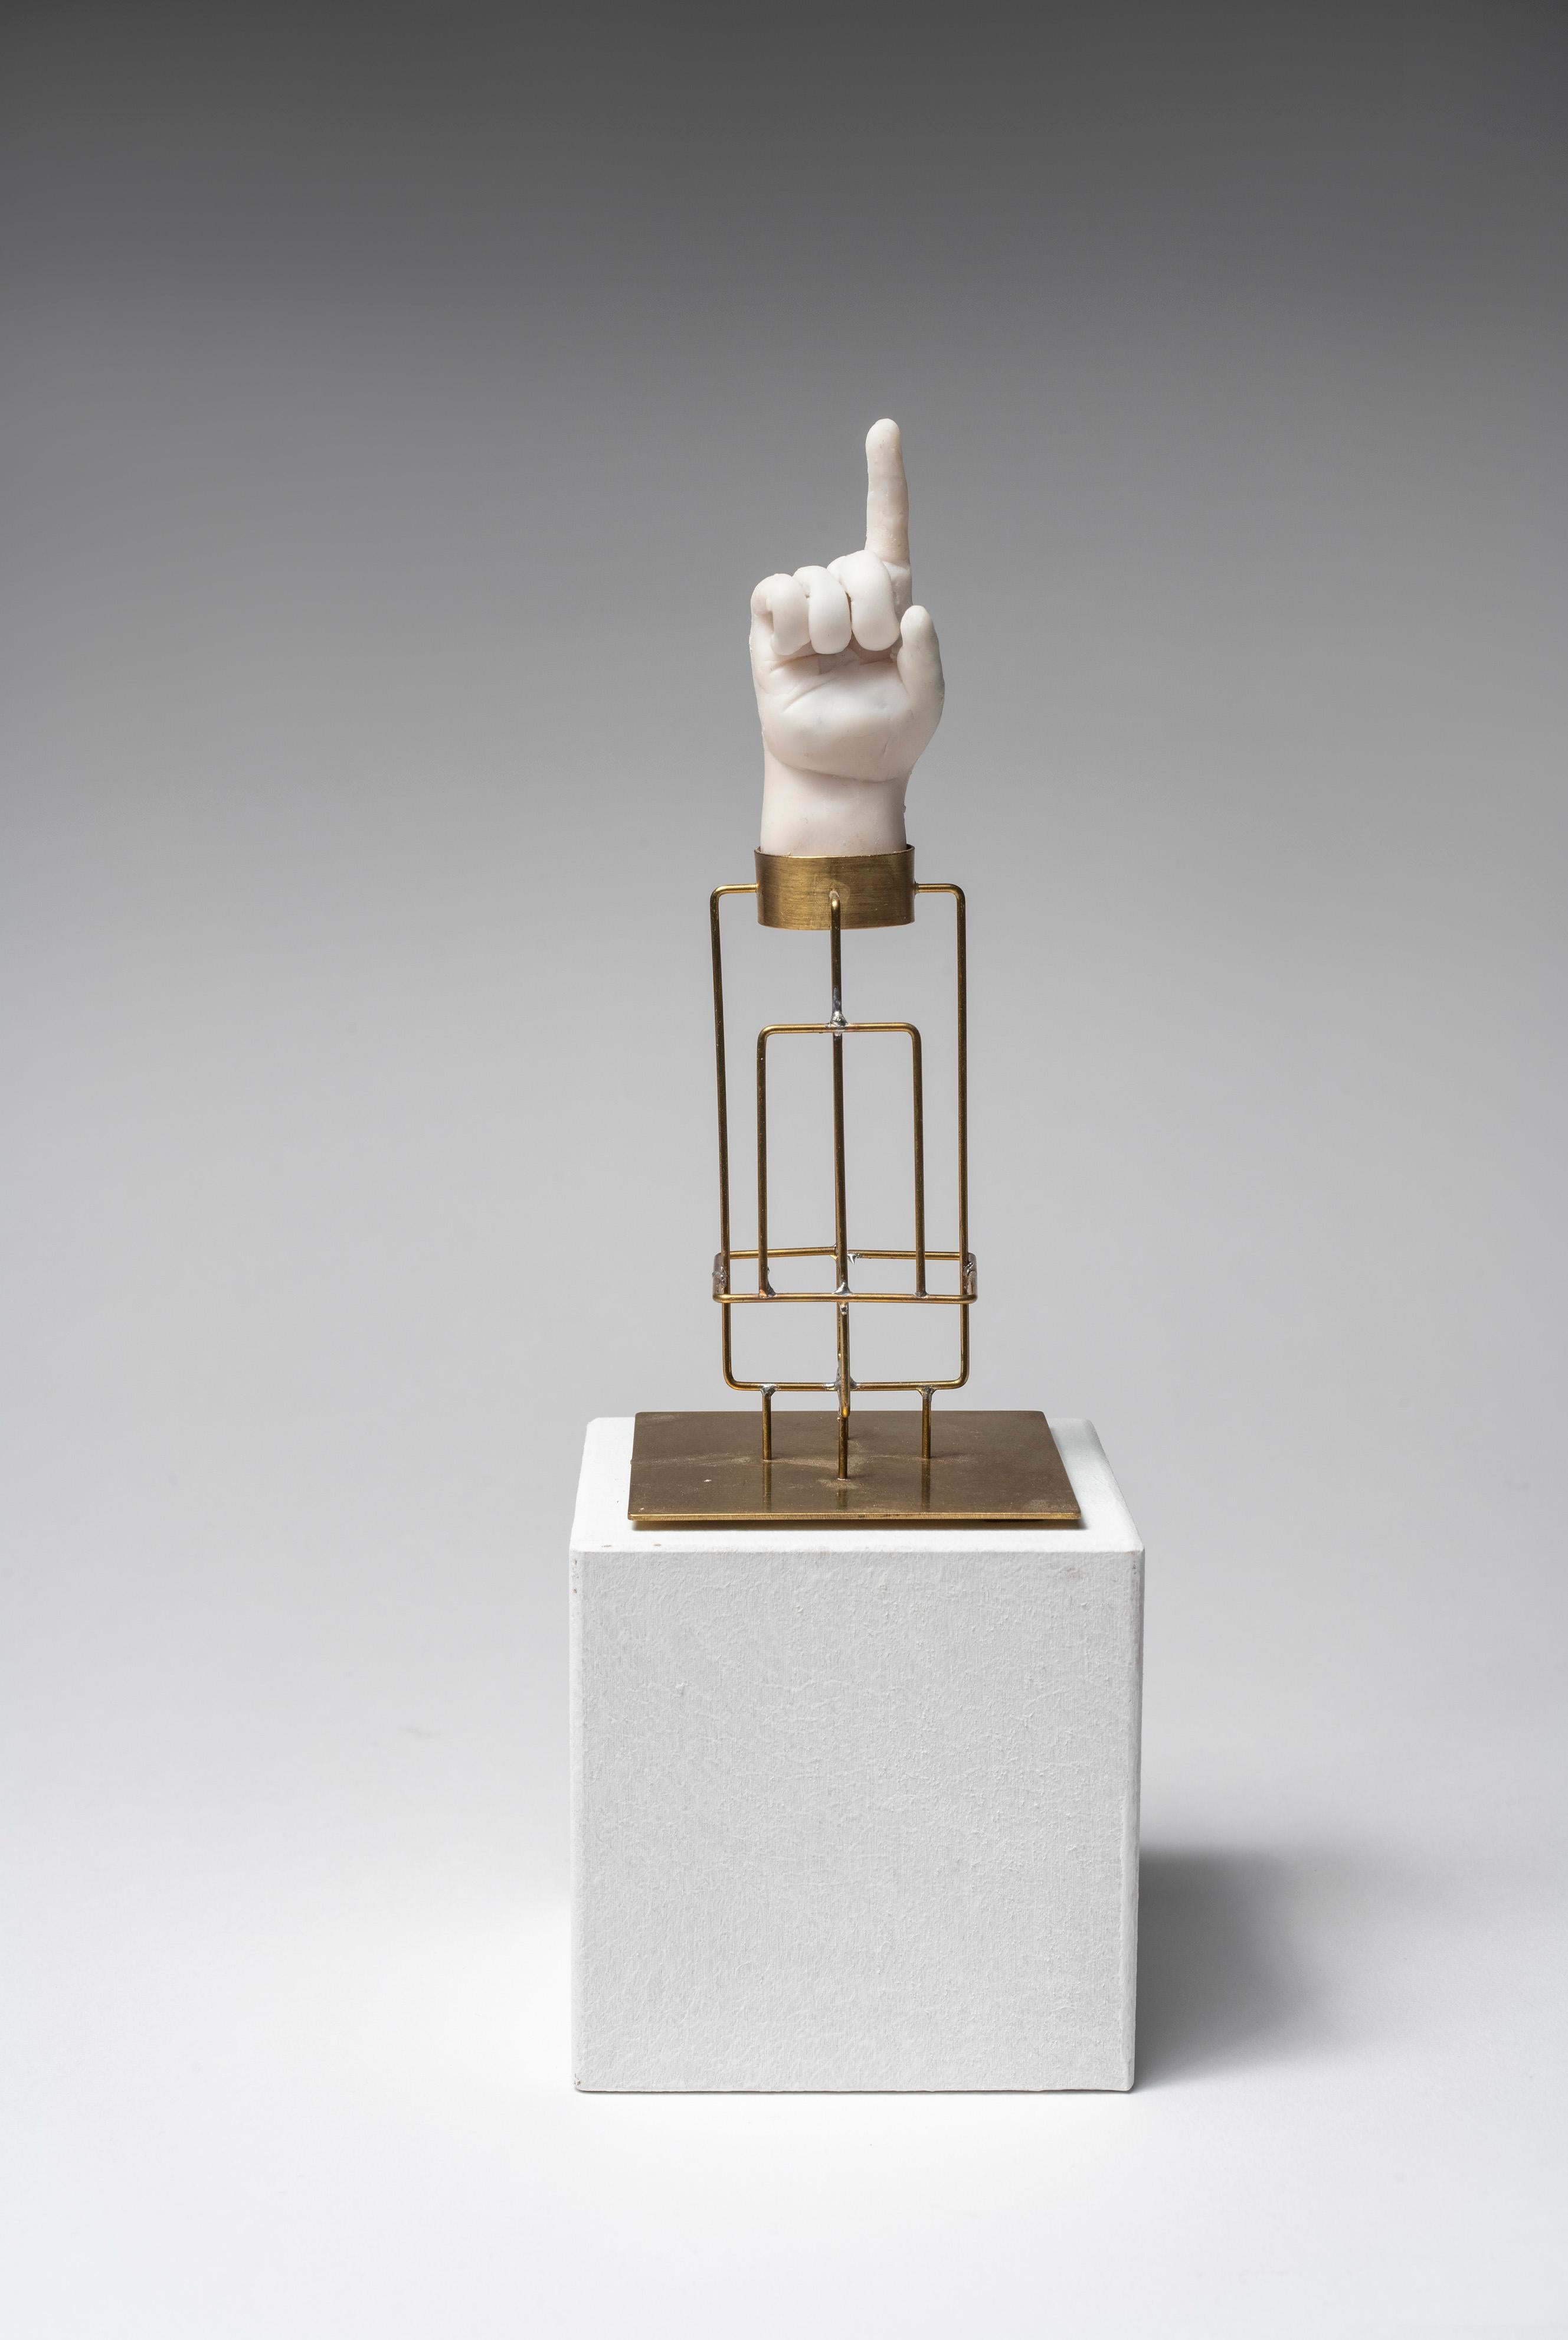 Sculpture de la main : « Piétite principale reliquaire 2 » - Mixed Media Art de Agnes Baillon & Eric de Dormael